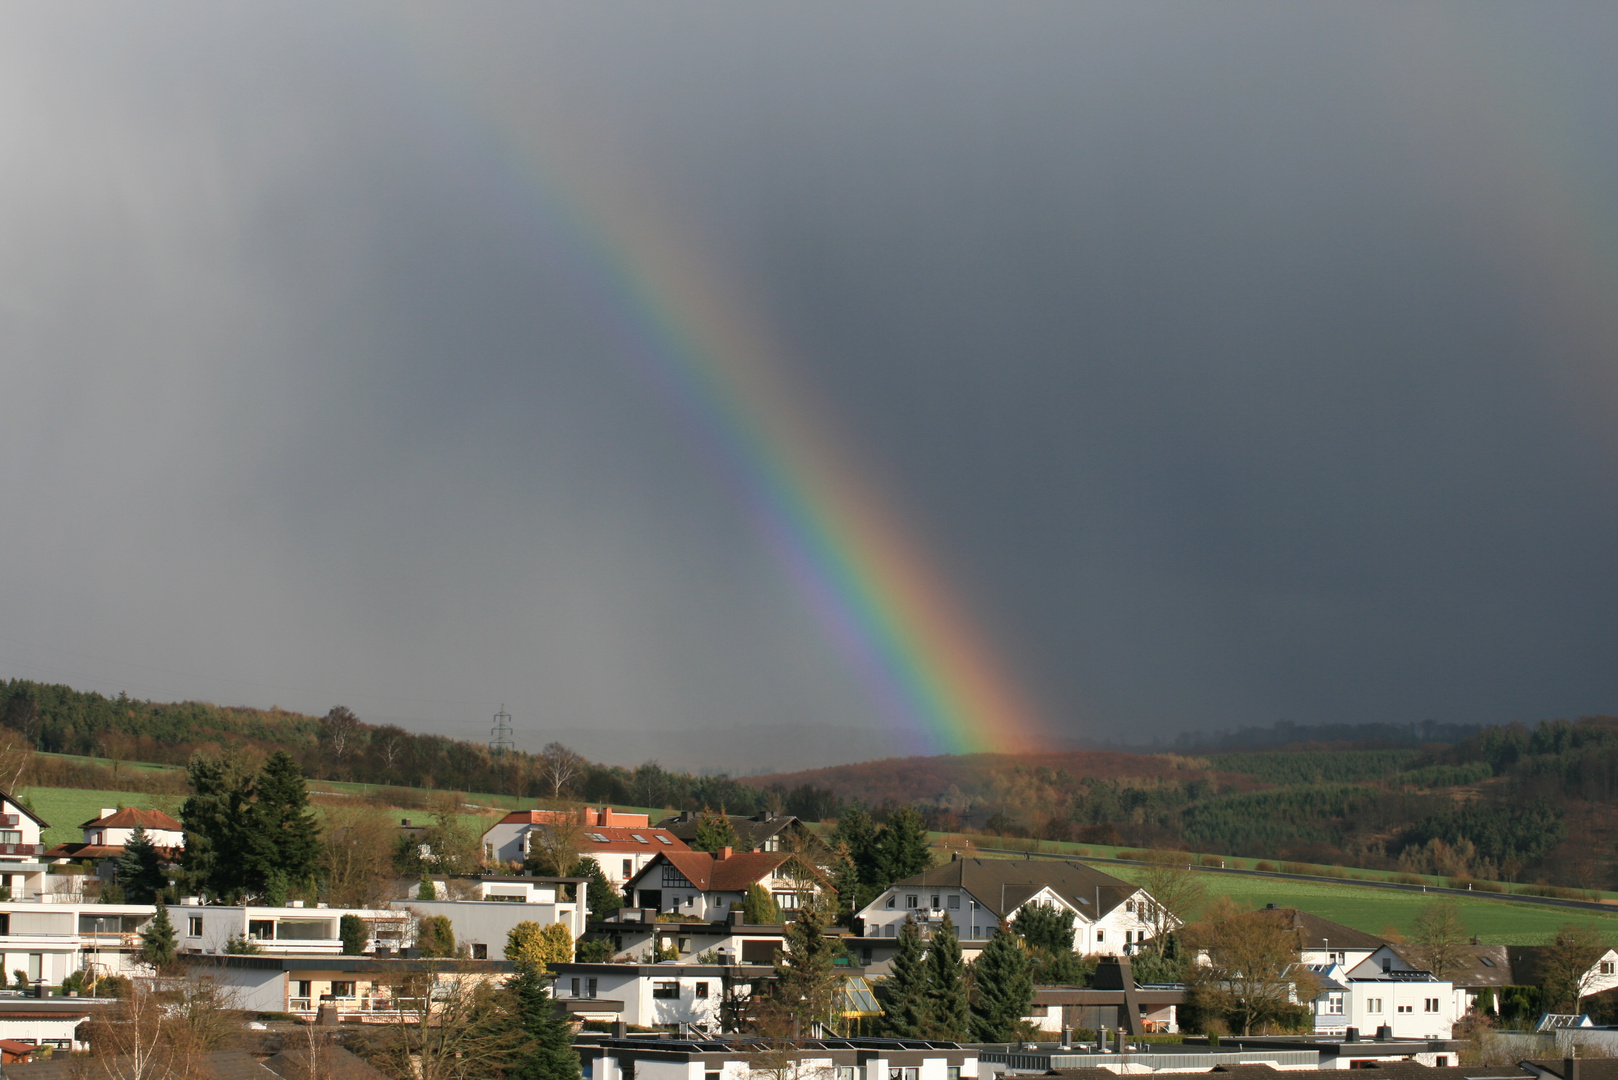 Regenbogen über Bad Camberg...